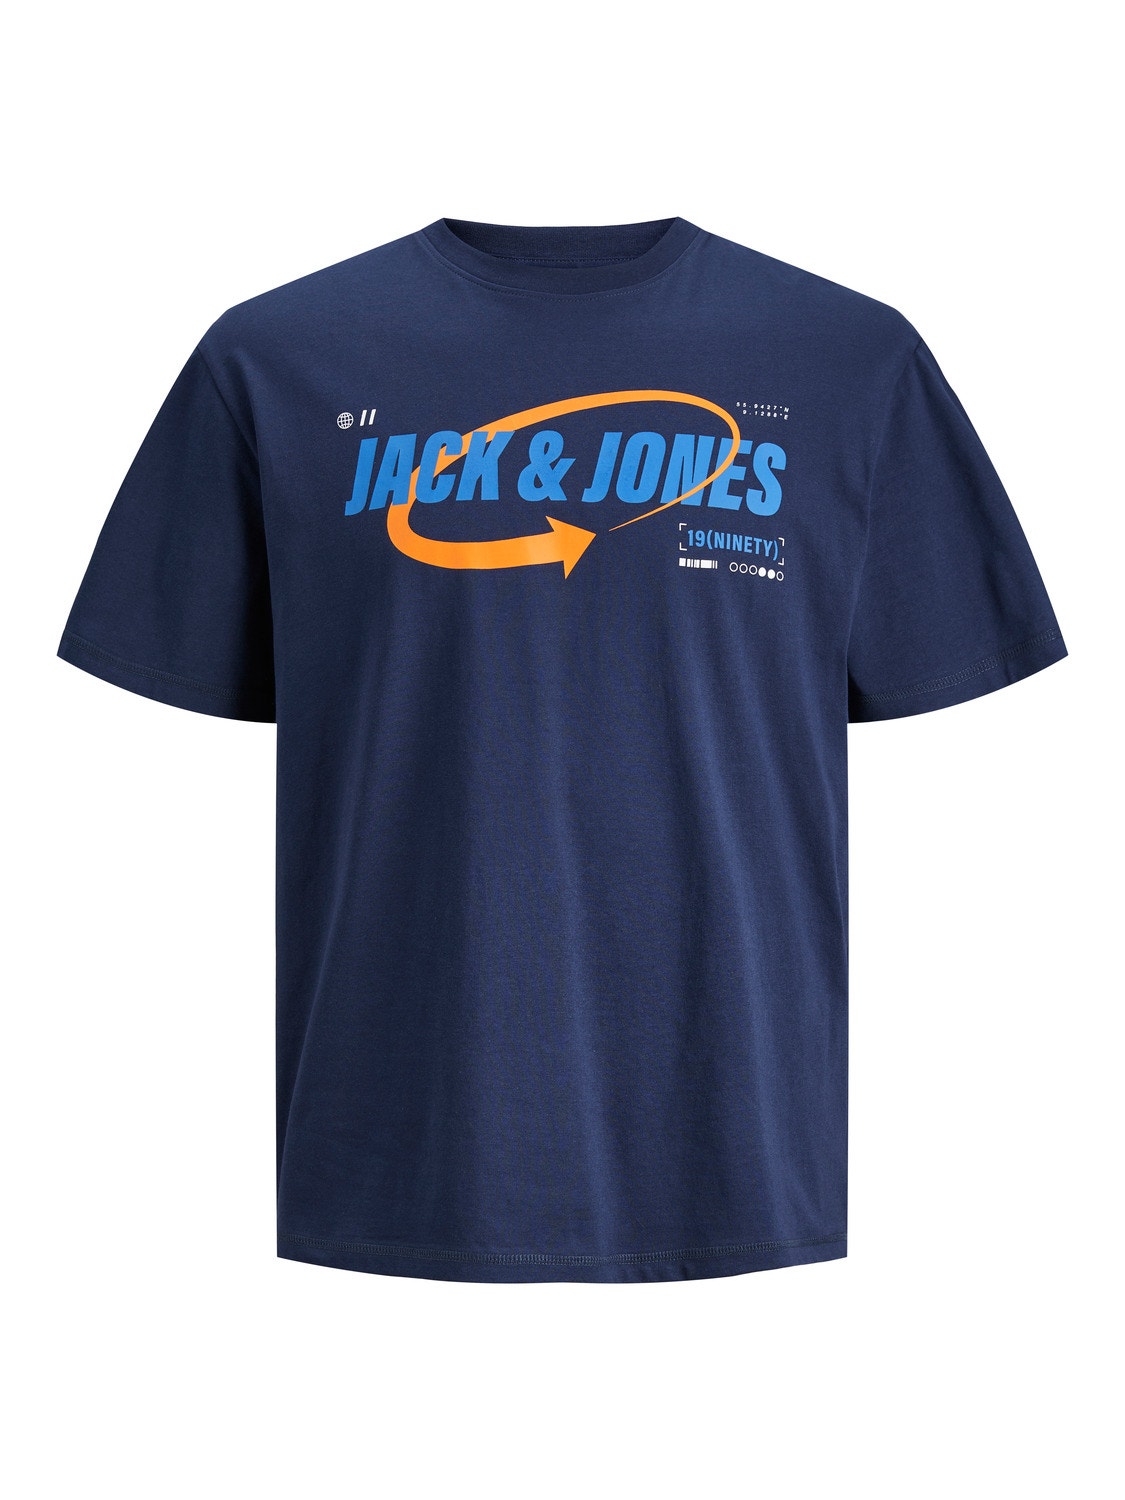 Jack & Jones T-shirt Logo Decote Redondo -Navy Blazer - 12245712